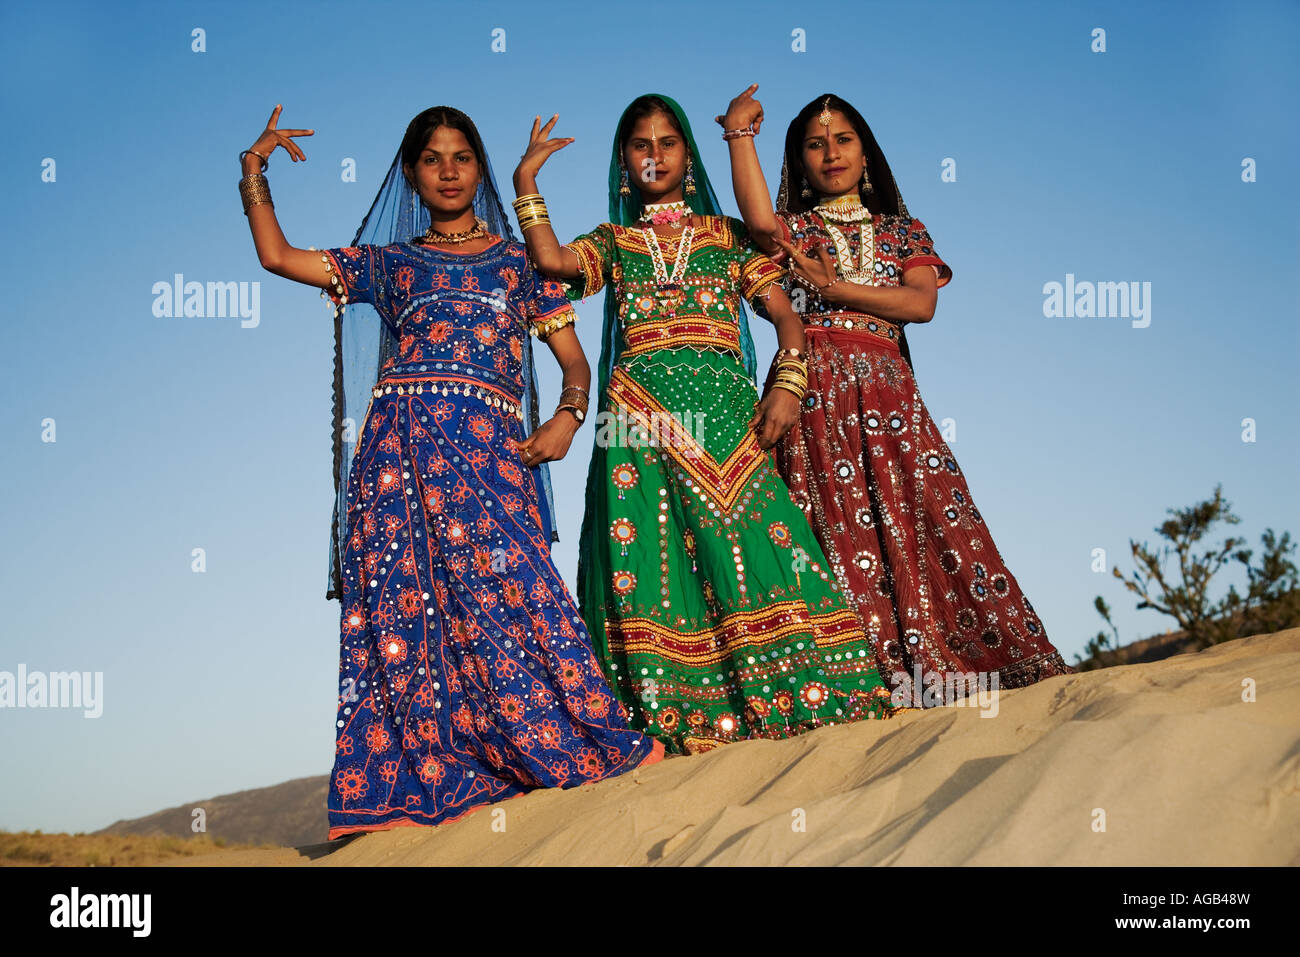 Junge indische Frauen in einem schön dekorierten Saris Durchführung einer traditionellen Rajasthani tanzen Thar-Wüste außerhalb Pushka Indiens Stockfoto